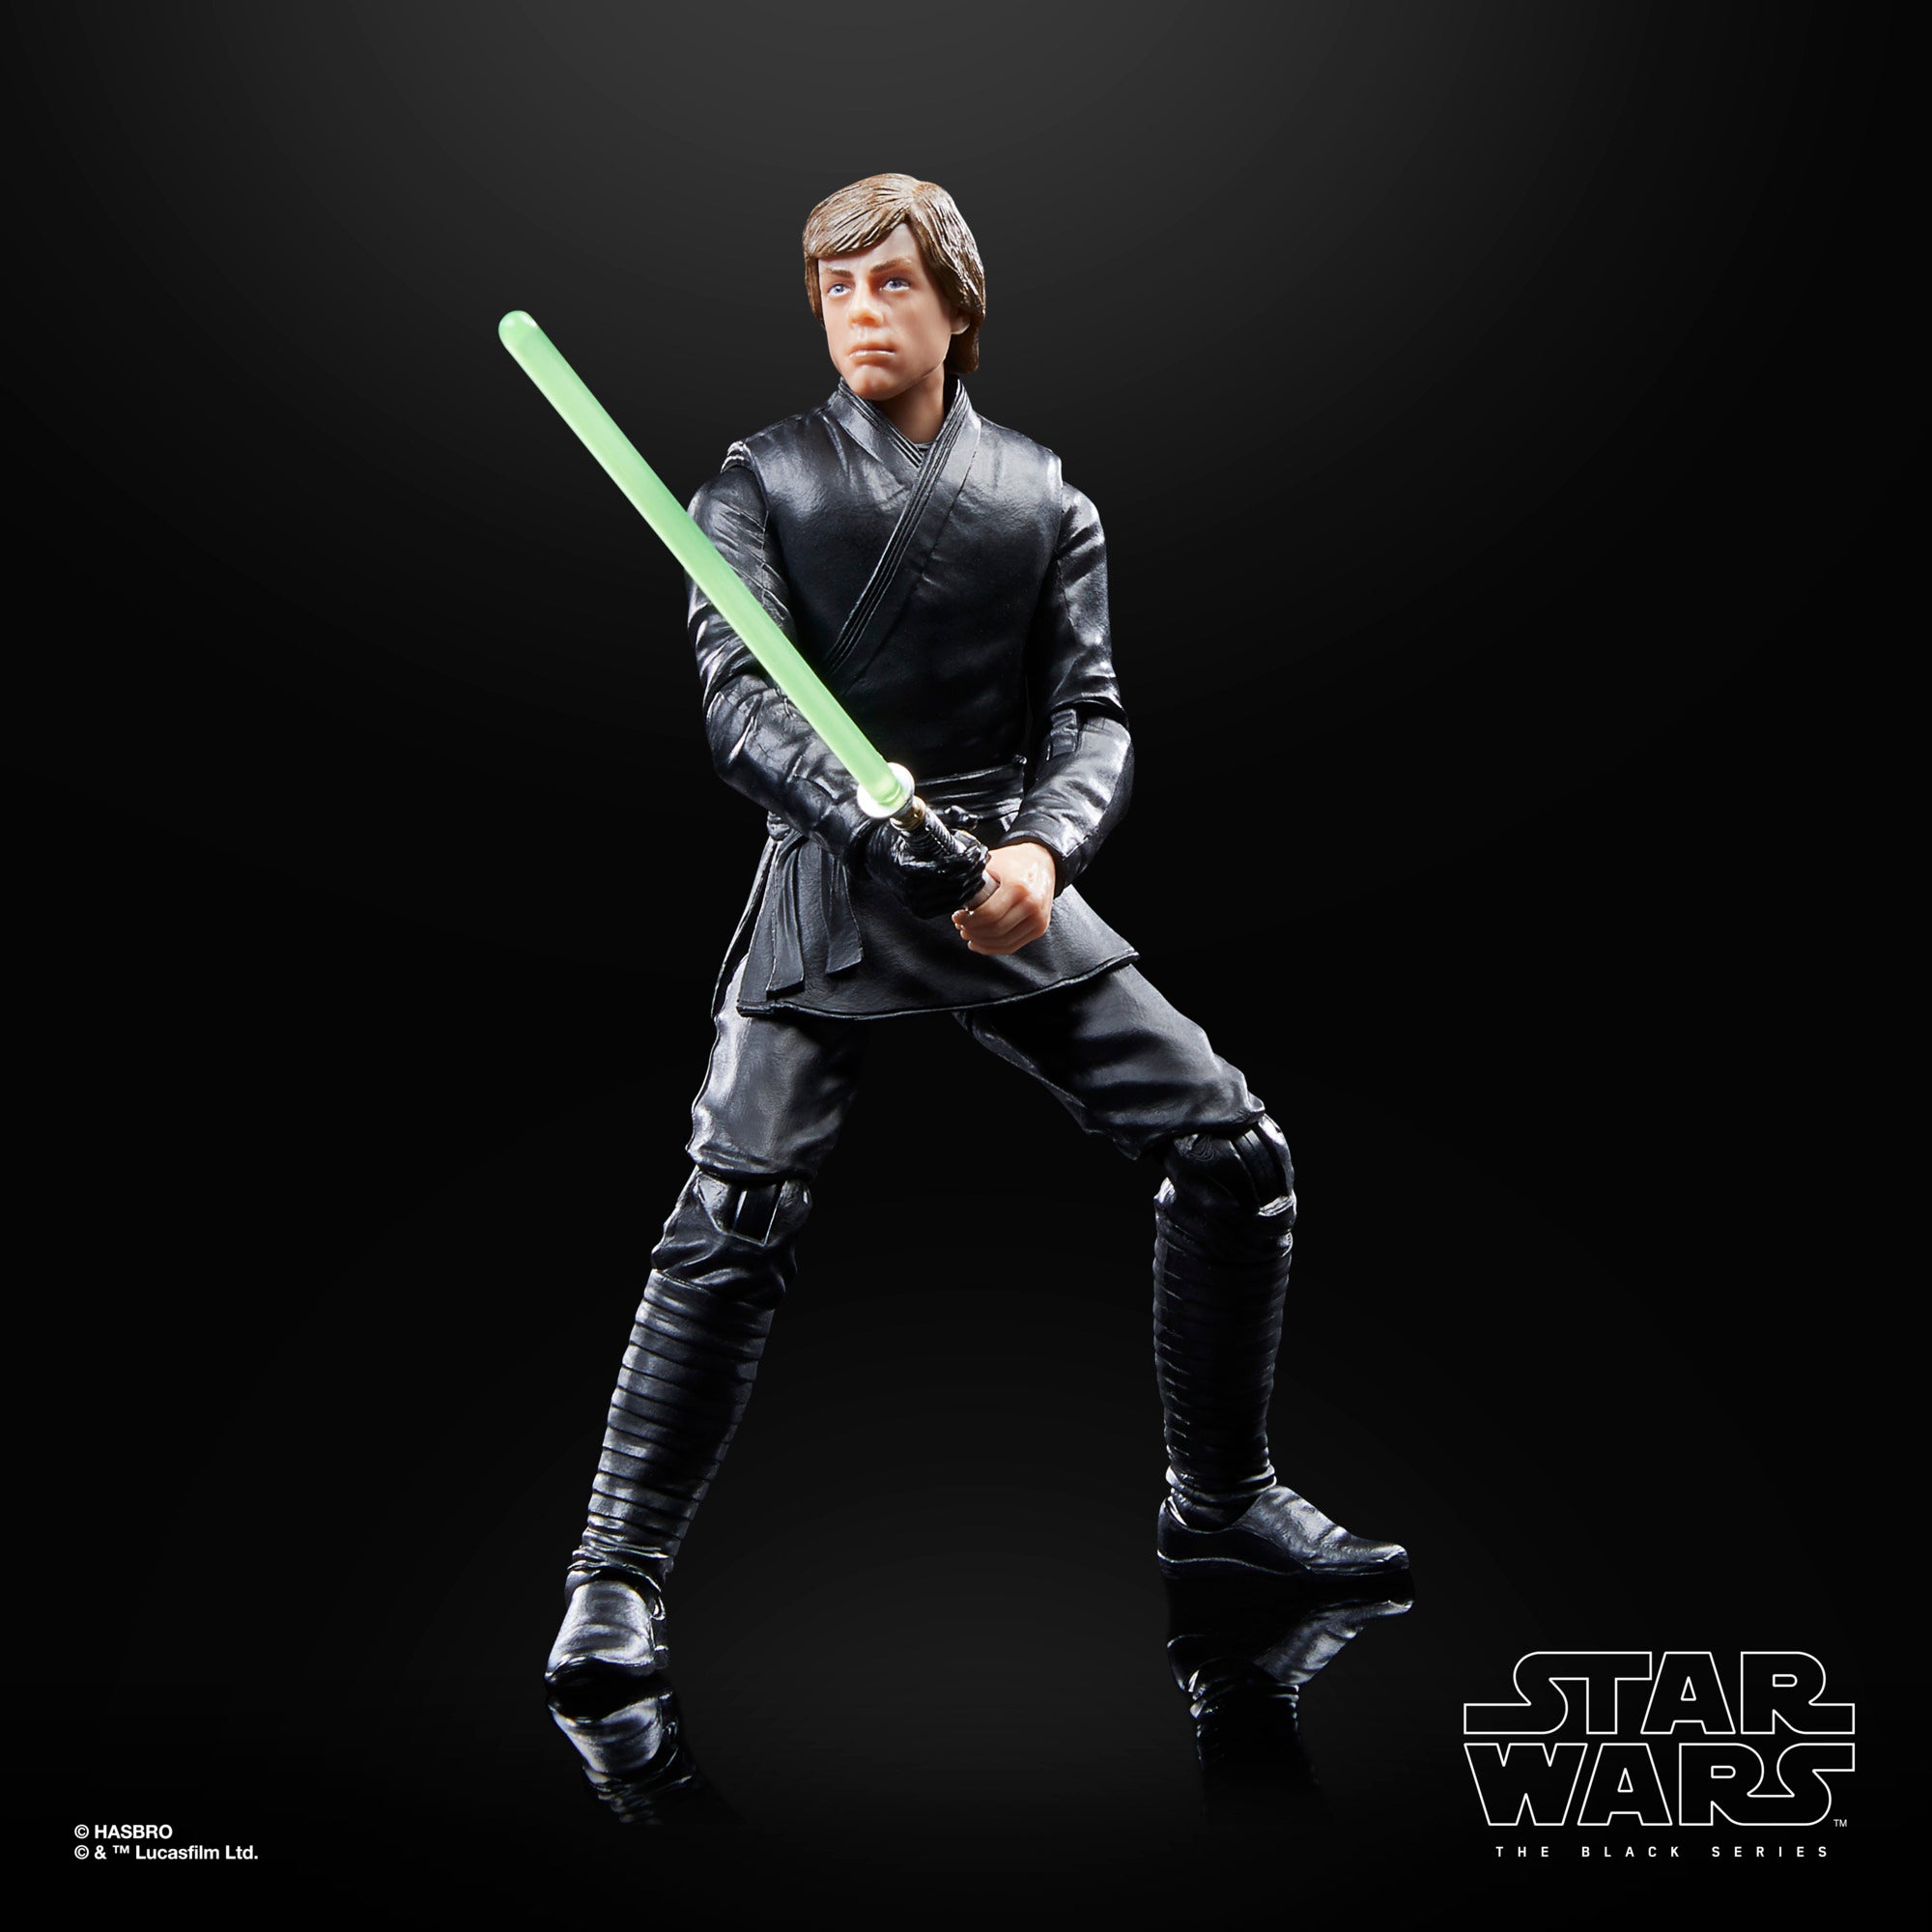 Star Wars The Black Series Luke Skywalker & Grogu – Hasbro Pulse